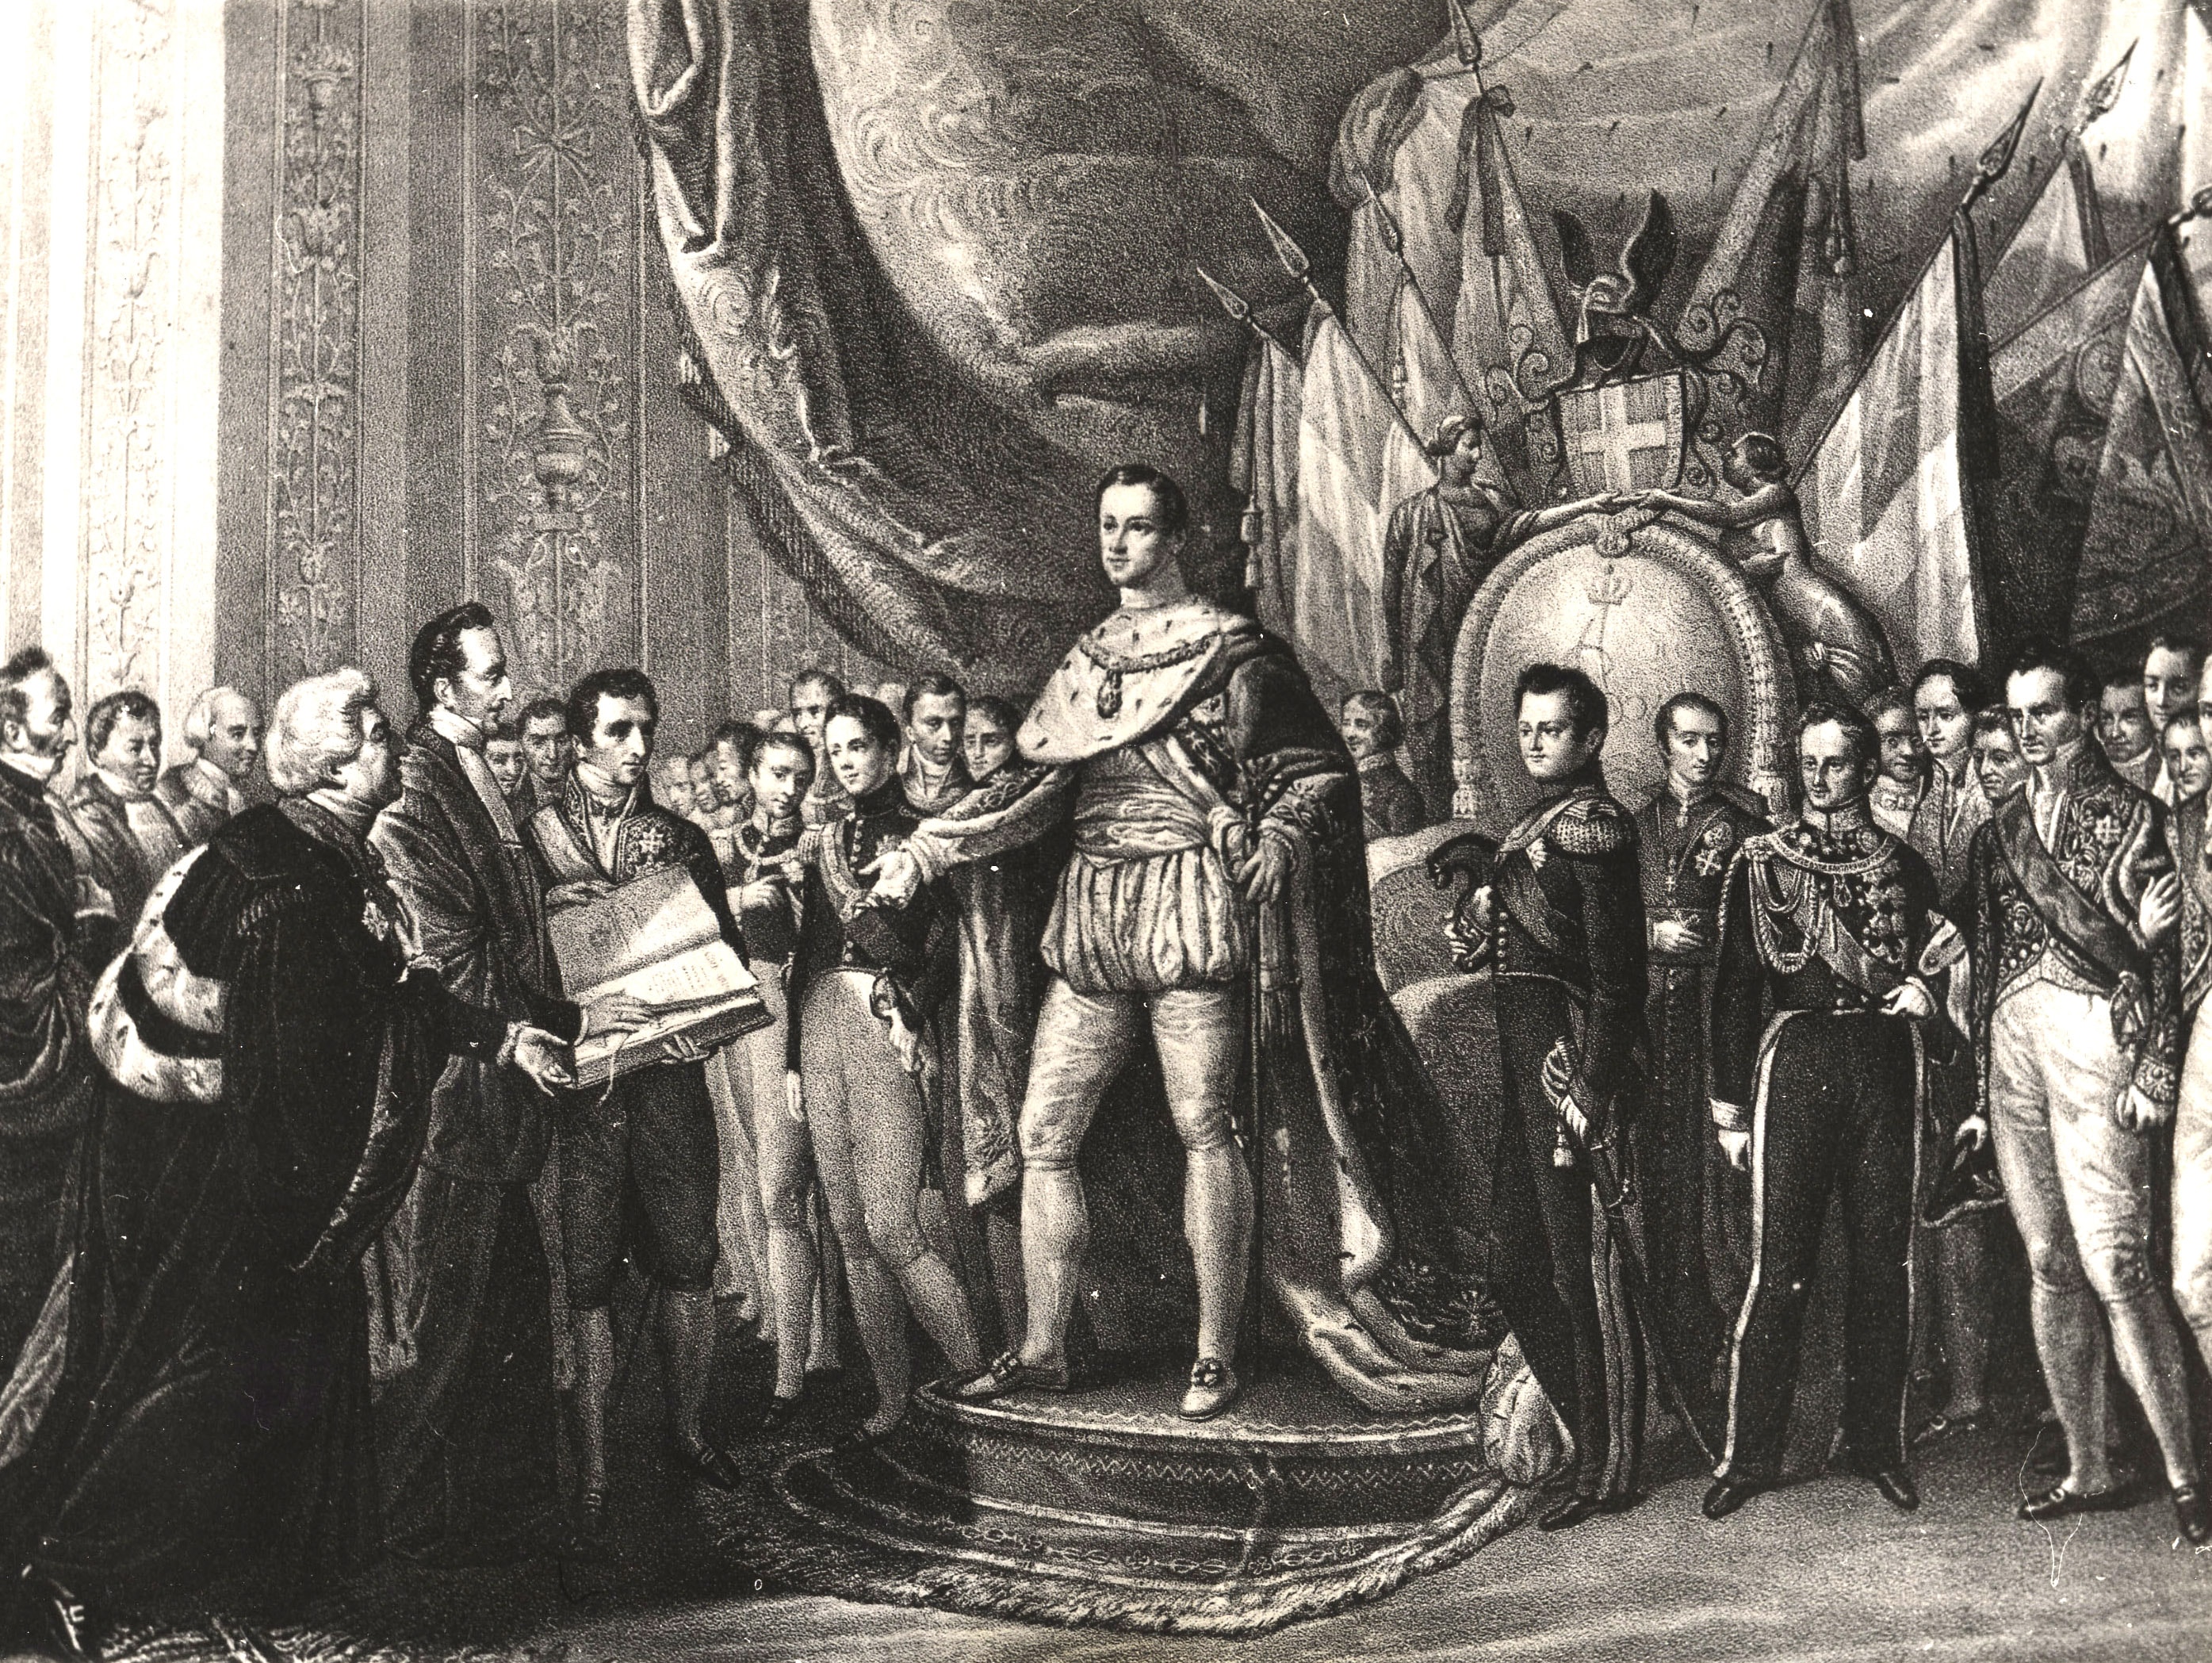 Promulgazione della Costituzione, denominata Statuto Albertino, dal nome del sovrano Carlo Alberto, che la concede nel 1848